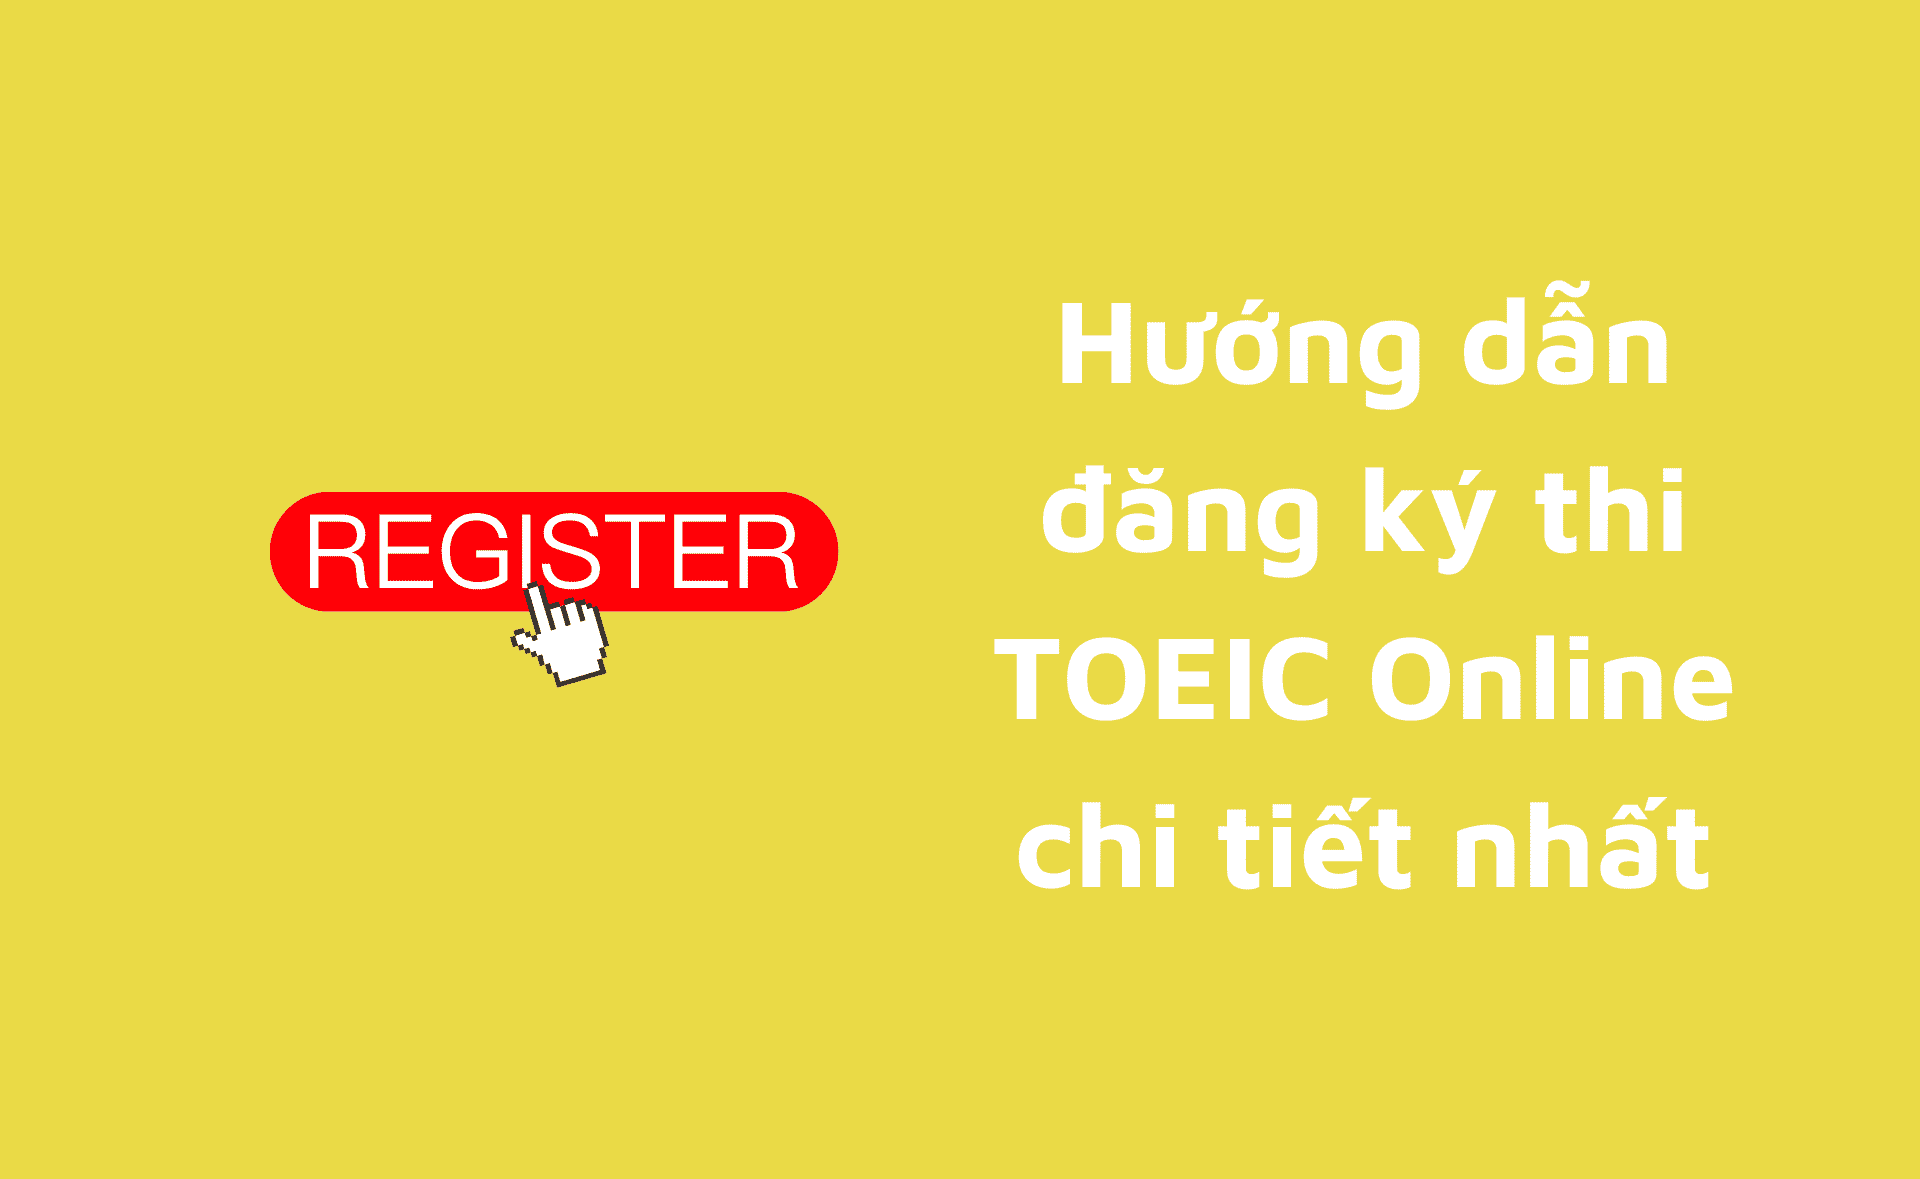 đăng ký thi TOEIC online